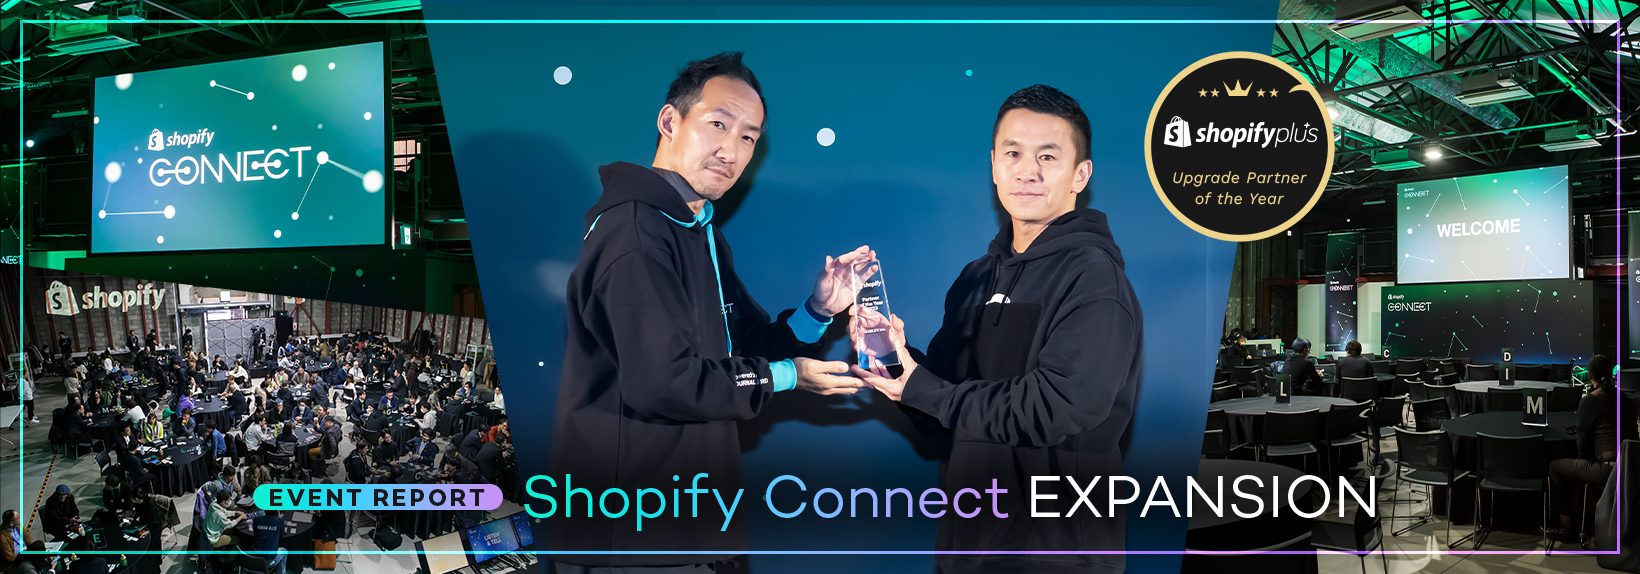 EC事業者の成長に貢献したWEBLIFEが2度目の年間表彰を受賞｜Shopify Connectレポート